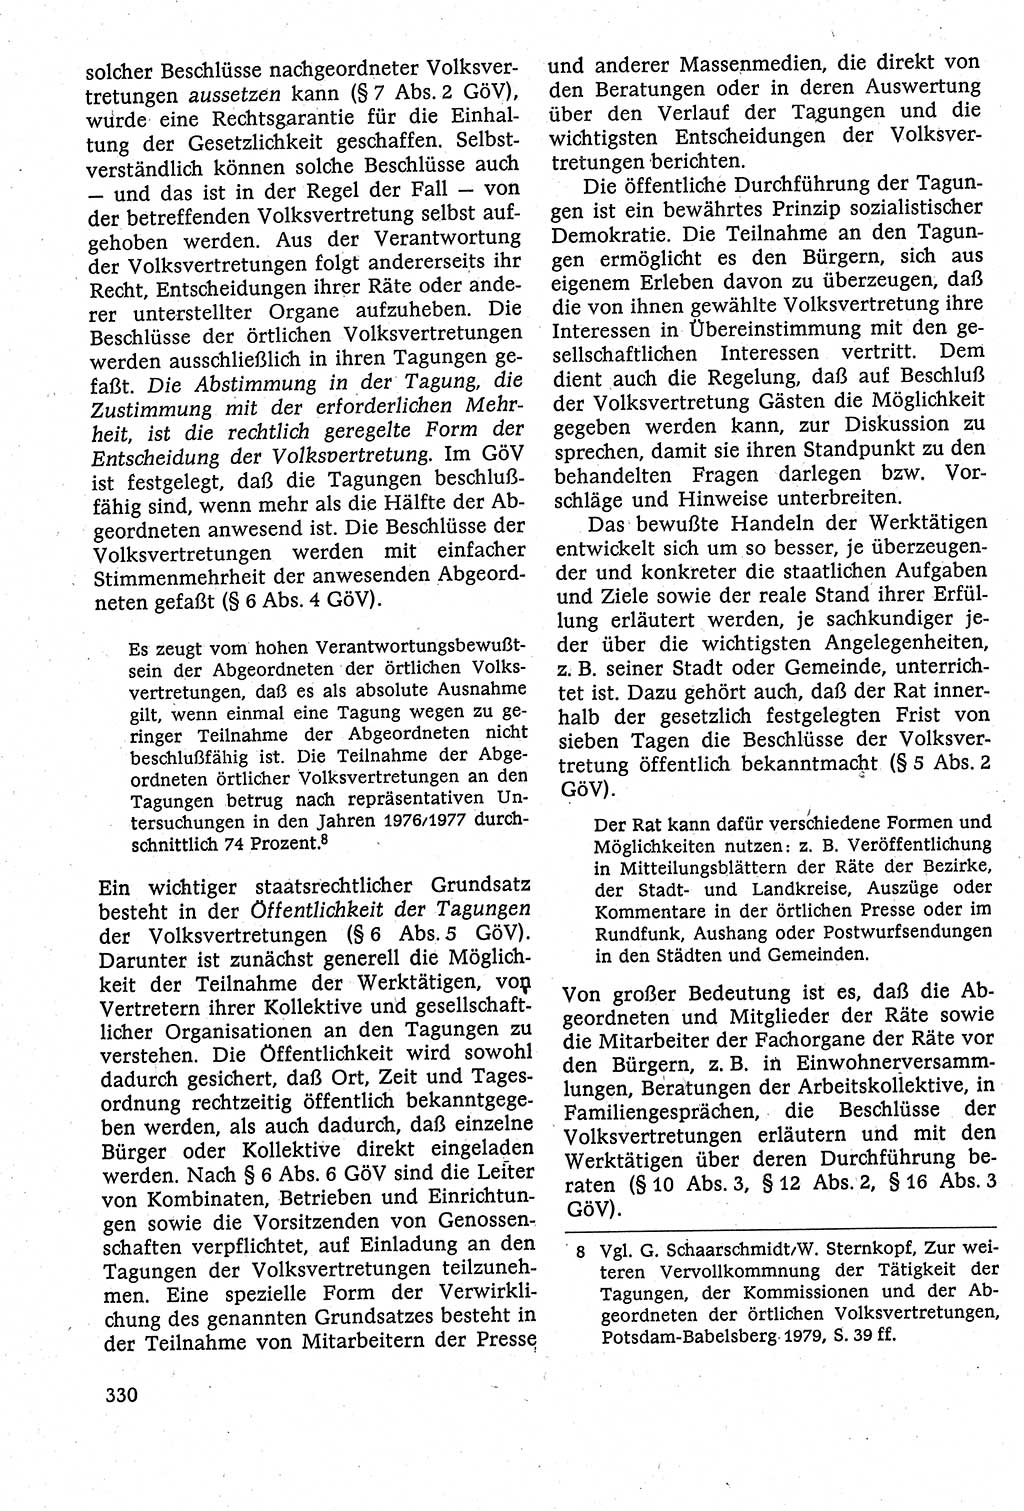 Staatsrecht der DDR [Deutsche Demokratische Republik (DDR)], Lehrbuch 1984, Seite 330 (St.-R. DDR Lb. 1984, S. 330)